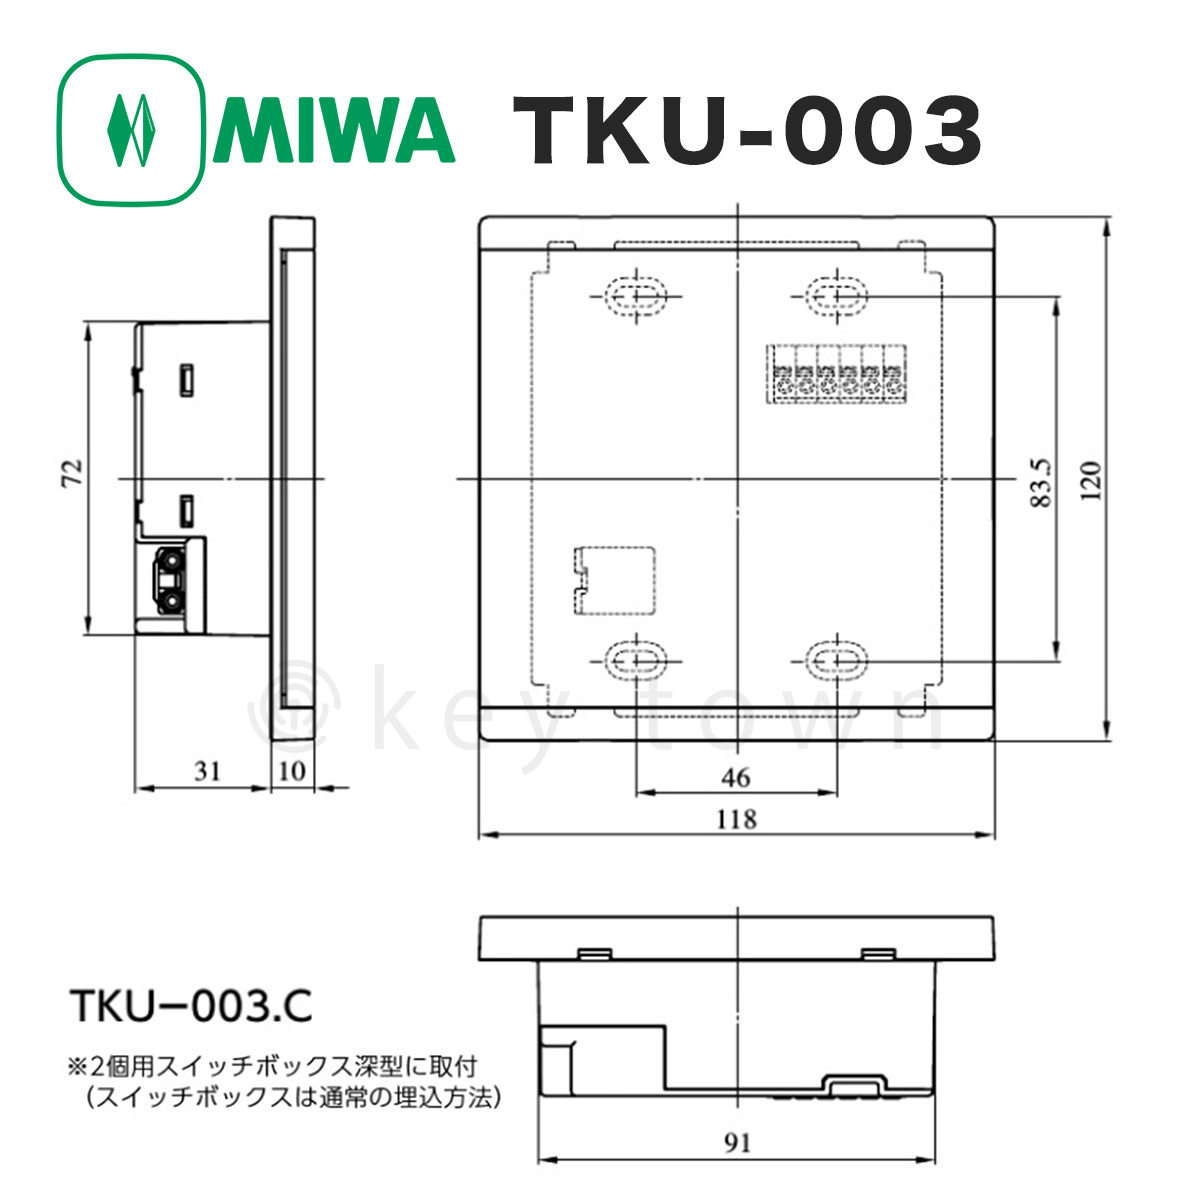 MIWA,美和ロック TKU-003C,D マジカルテンキーユニット・制御器つき鍵(カギ) 交換 取替